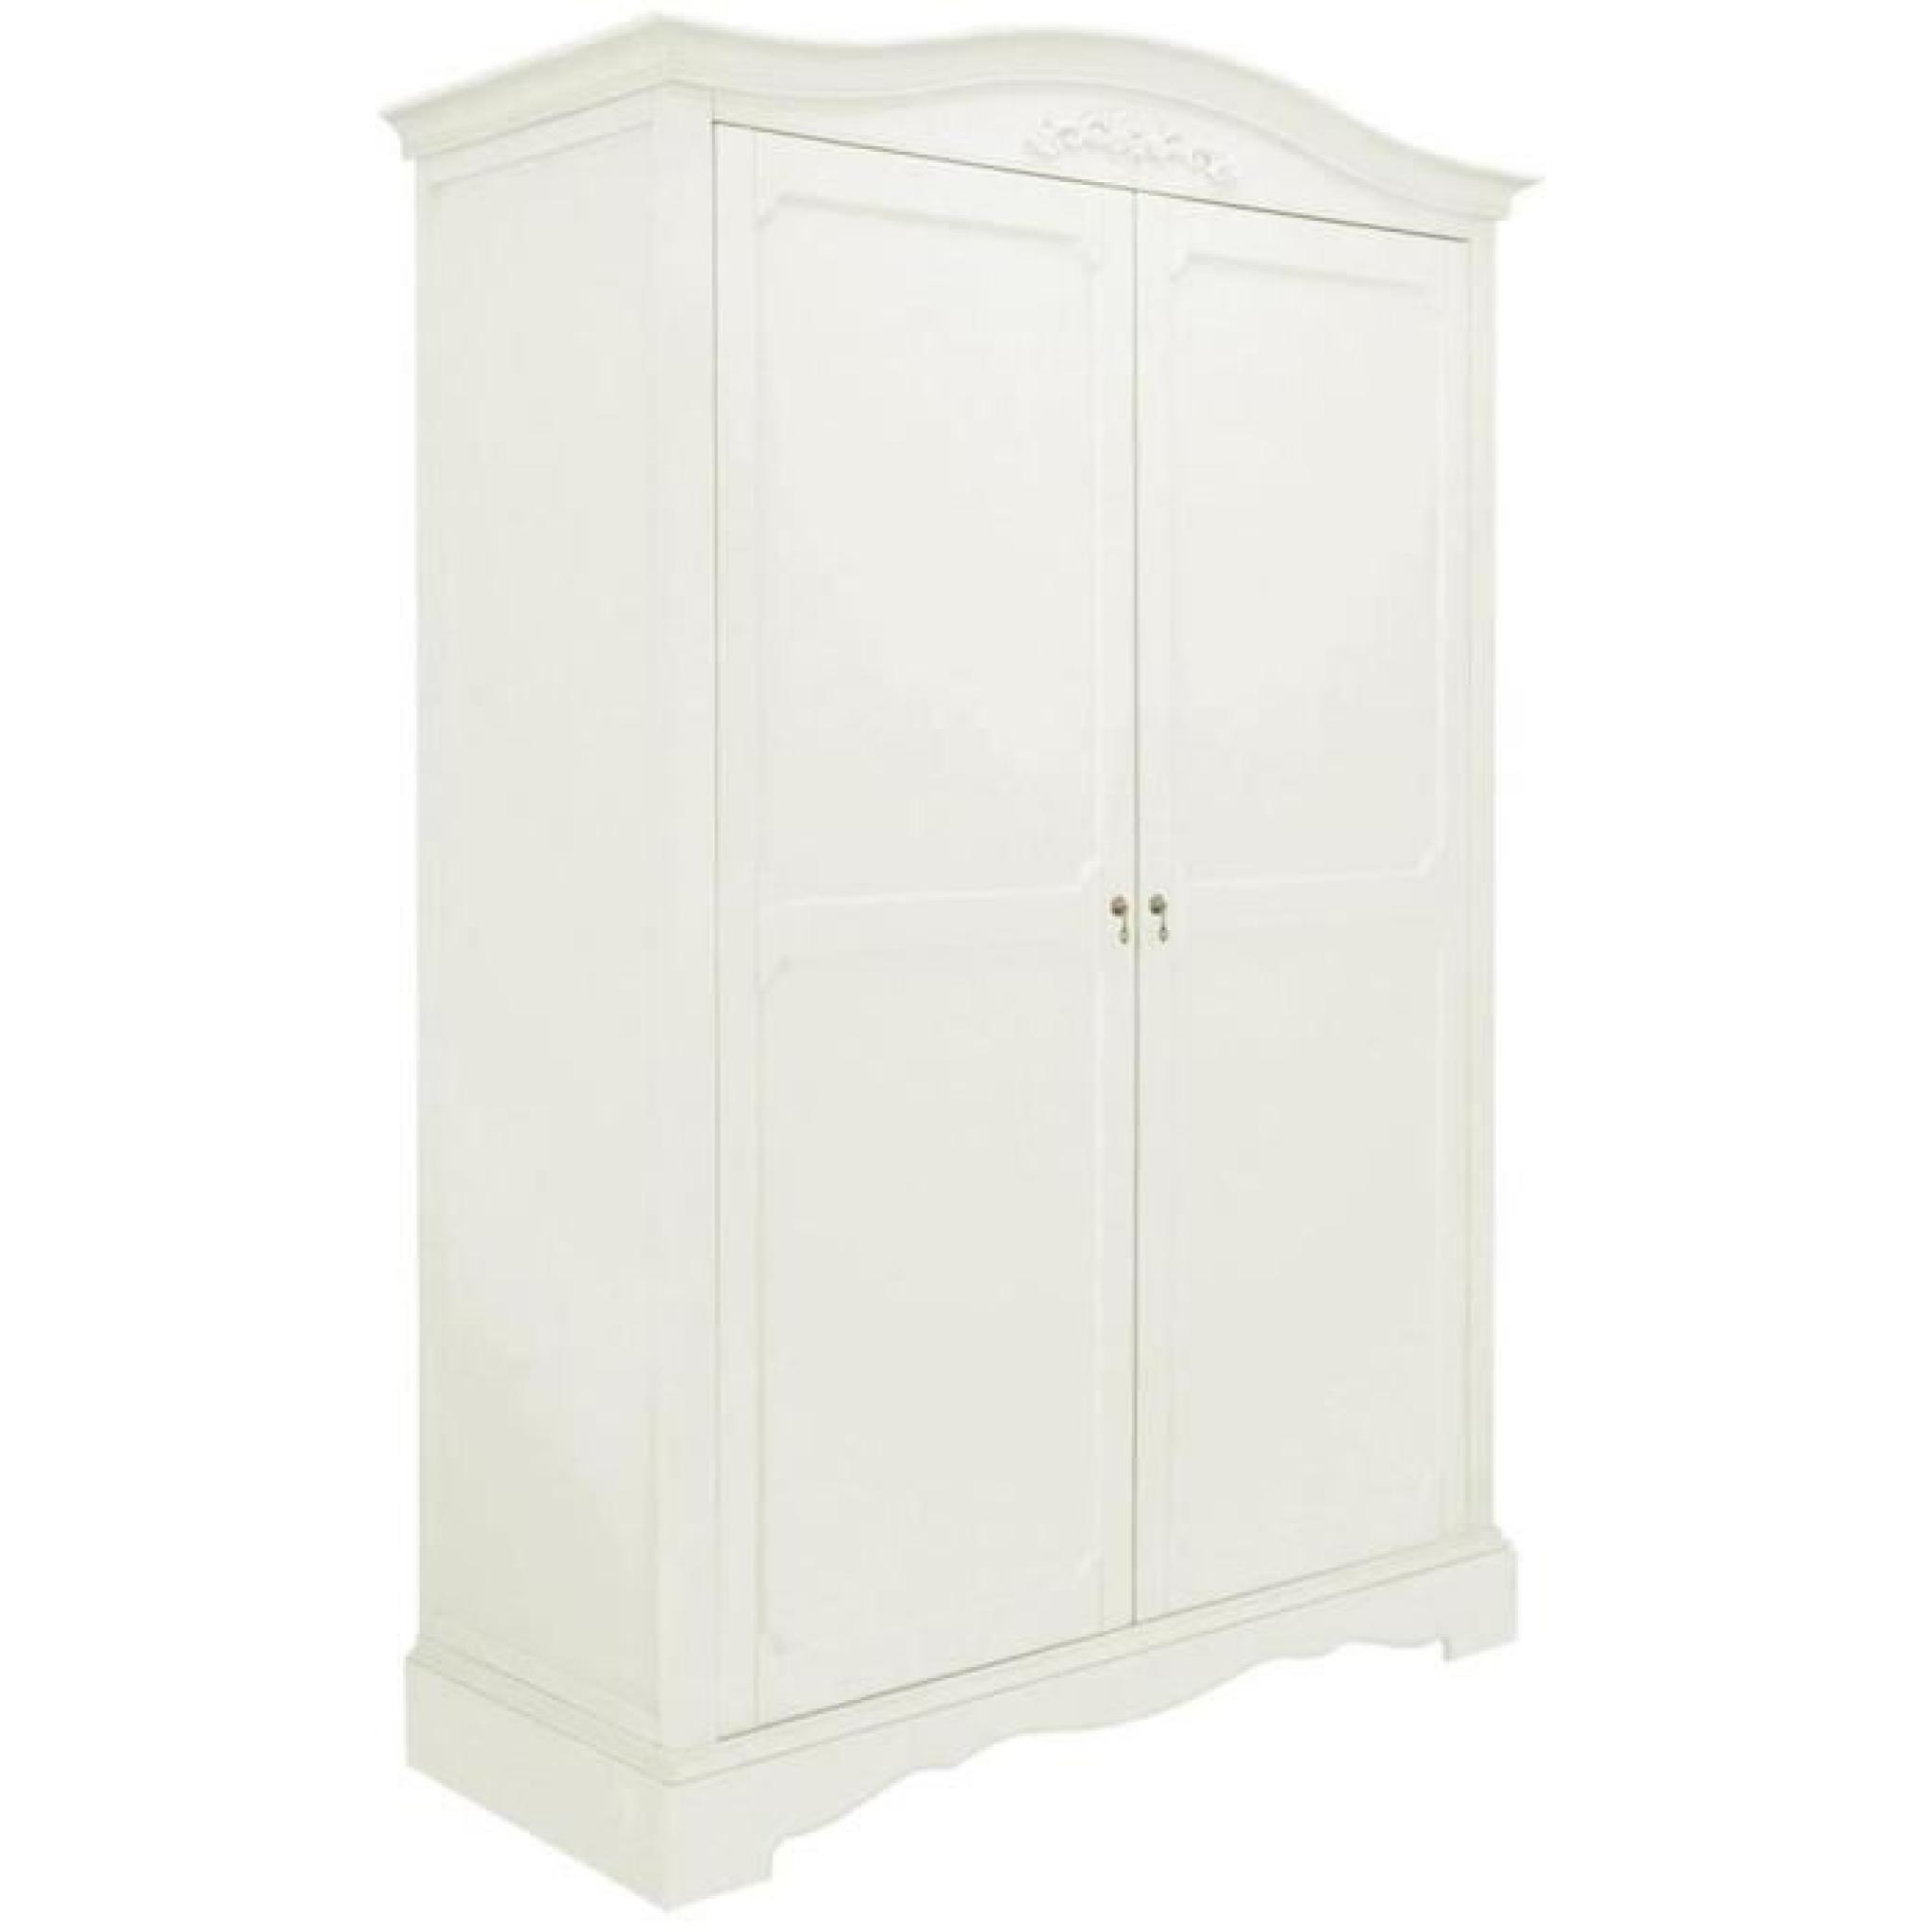 Armoire en bois coloris blanc - Dim : H 204 x L 141 x P 61 cm